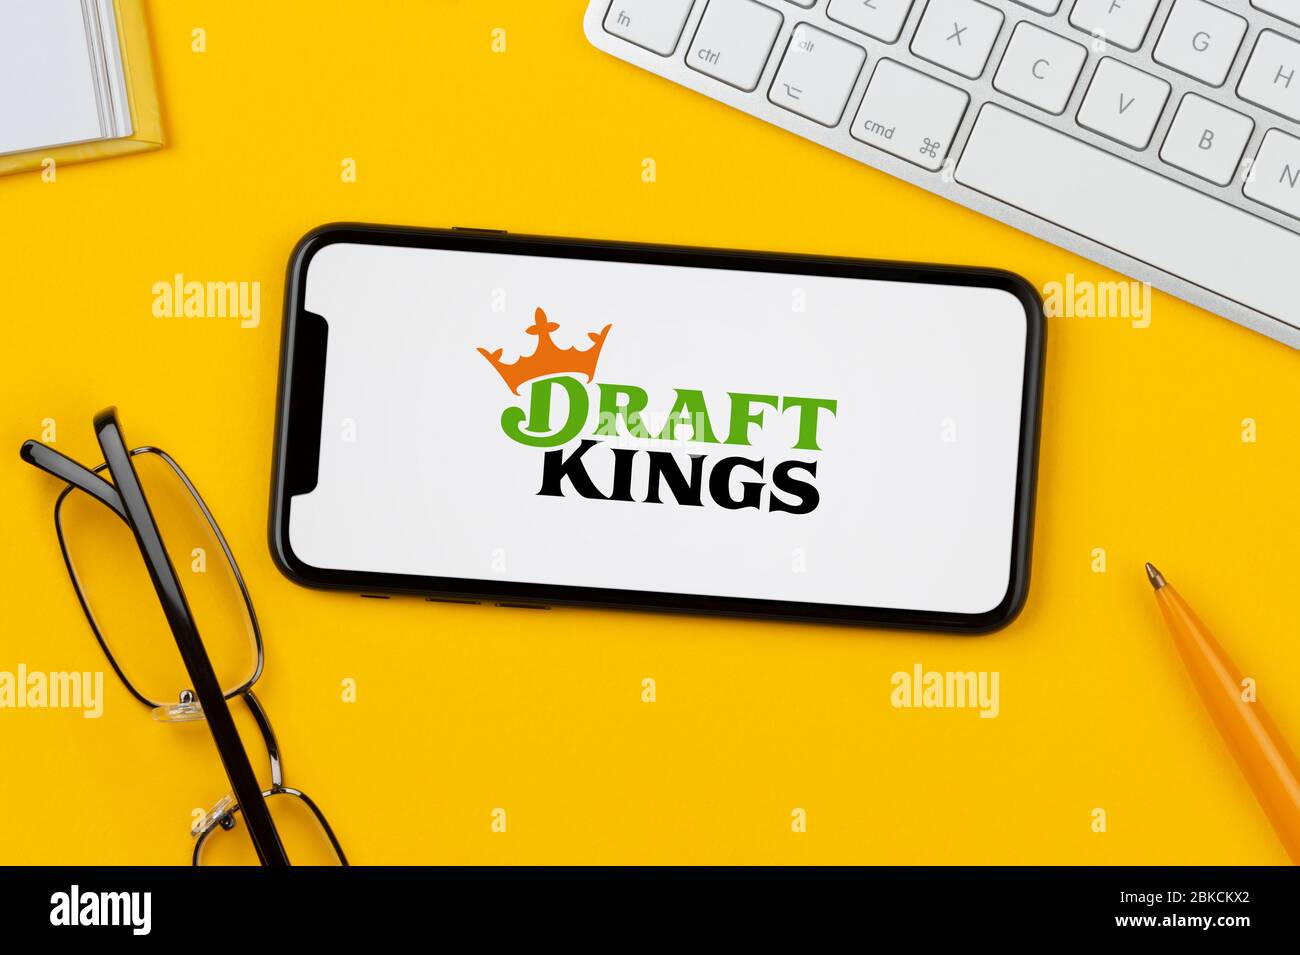 Un smartphone affichant le logo Draft Kings repose sur un fond jaune avec un clavier, des lunettes, un stylo et un livre (usage éditorial uniquement). Banque D'Images